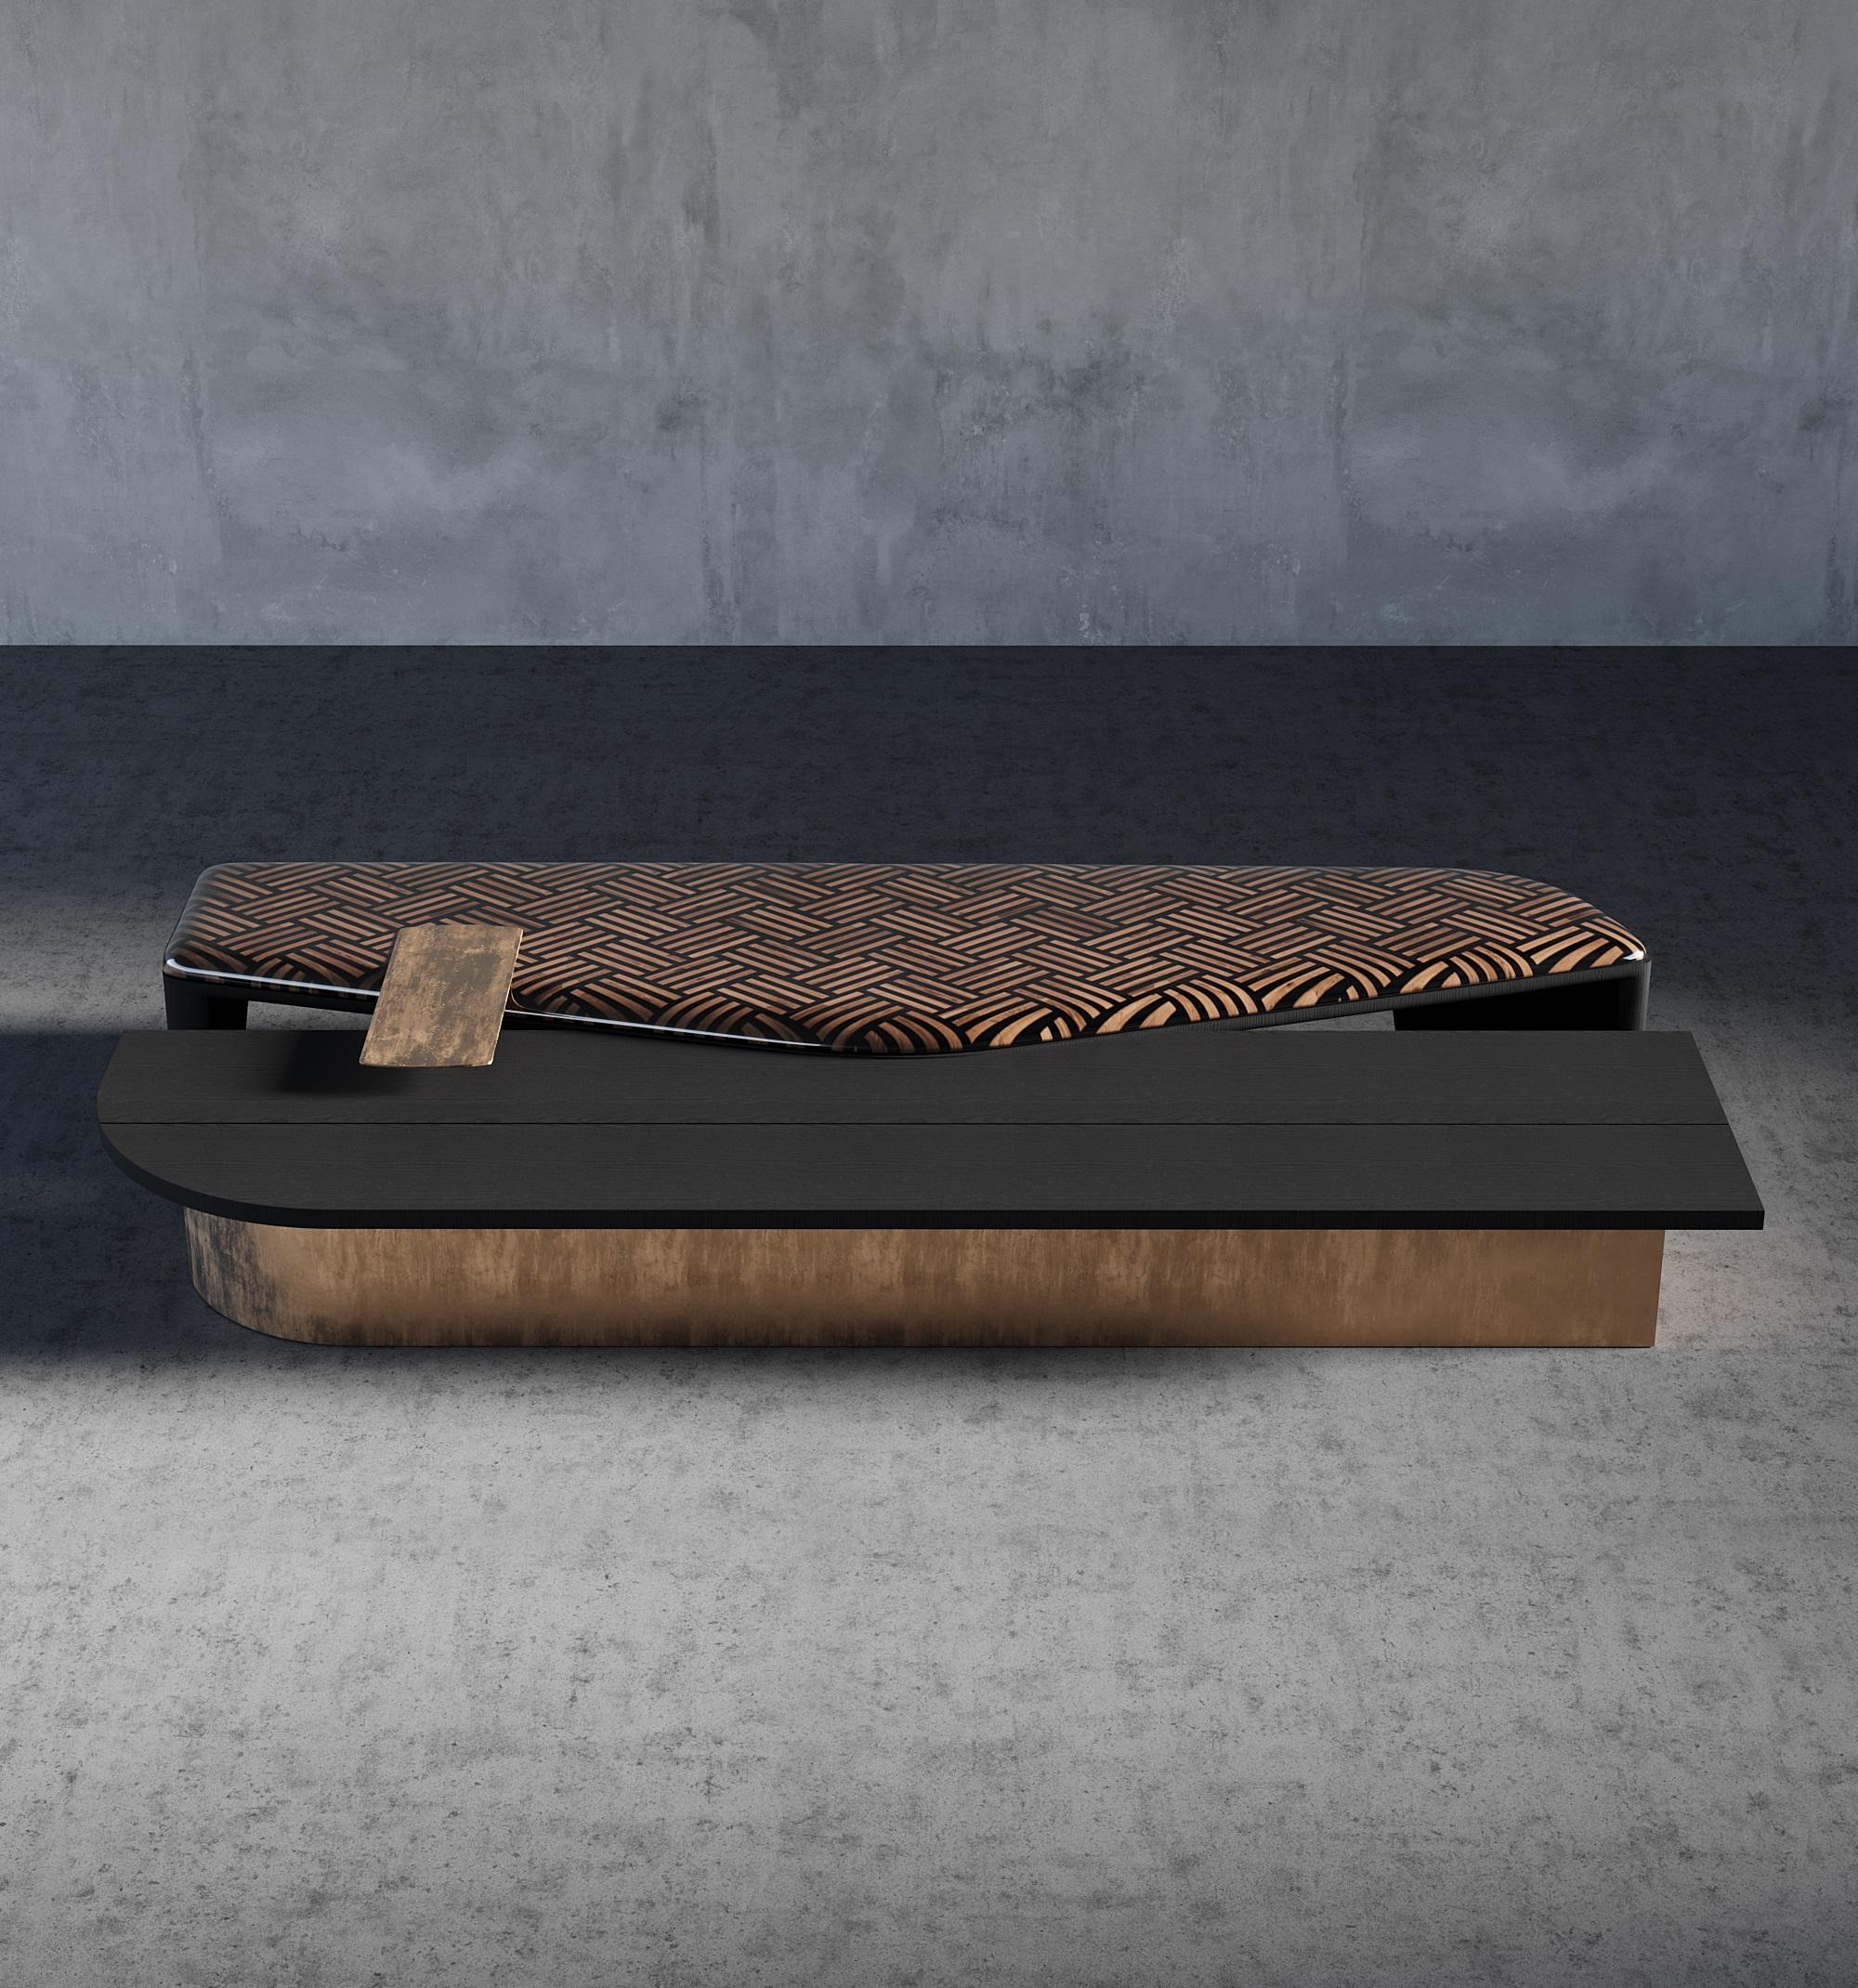 Die Terra Collection'S bietet Center Table, die die Wärme und natürliche Schönheit von Holz mit der Eleganz und Haltbarkeit von Metall kombinieren. Die Kombination von natürlichen MATERIALEN mit einem Holzintarsienmuster auf der Oberseite schafft